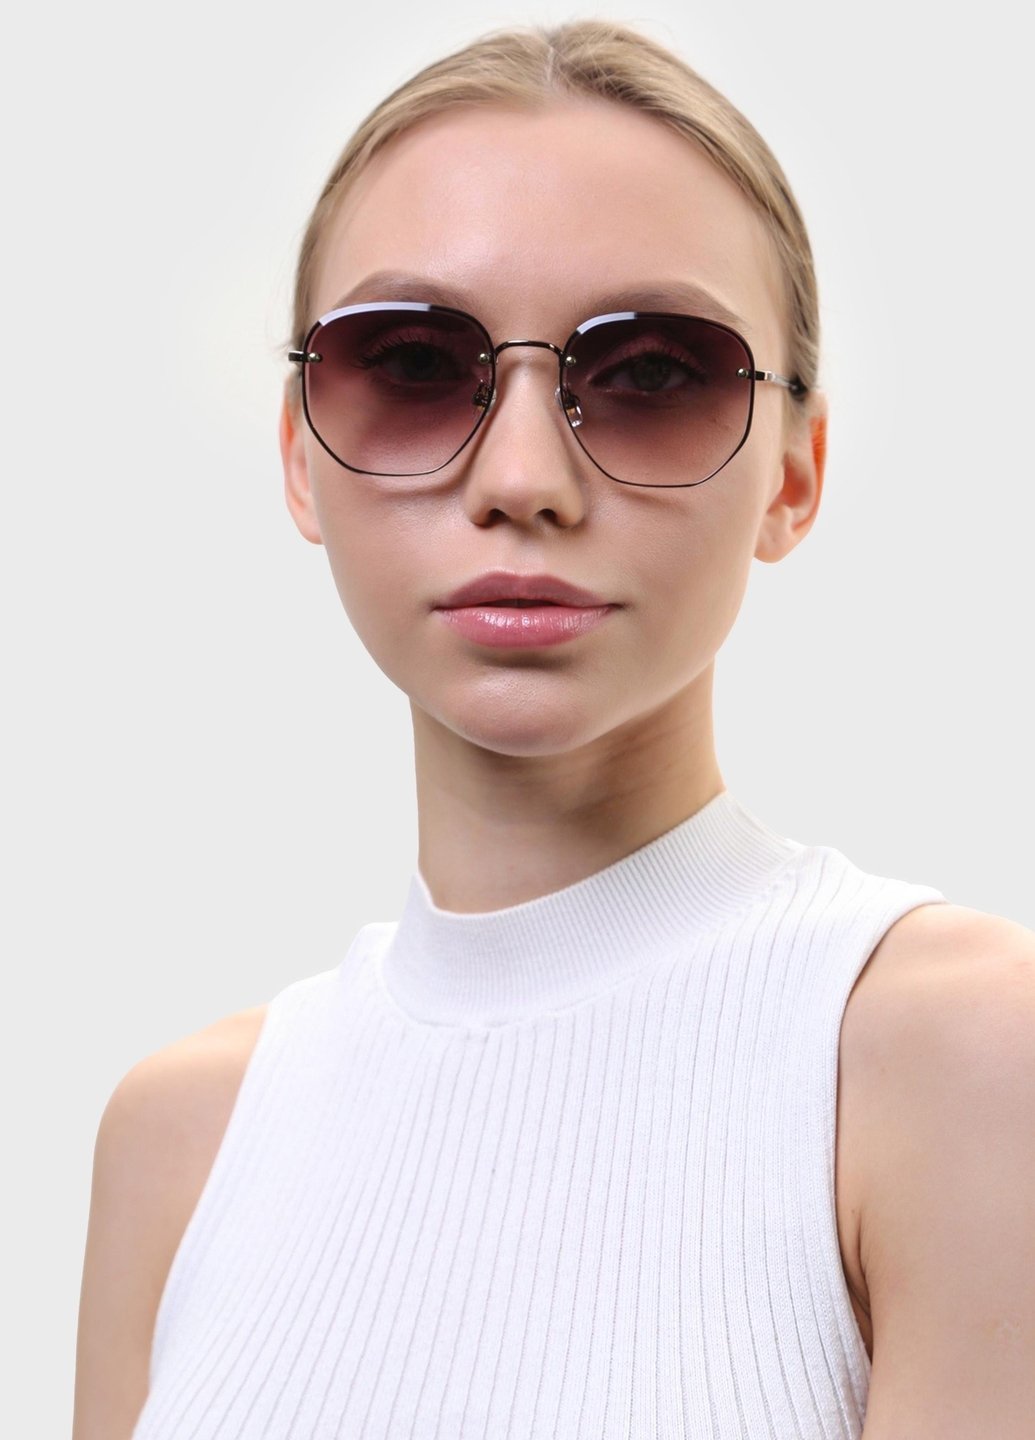 Купить Женские солнцезащитные очки Merlini с поляризацией S31448 117150 - Коричневый в интернет-магазине